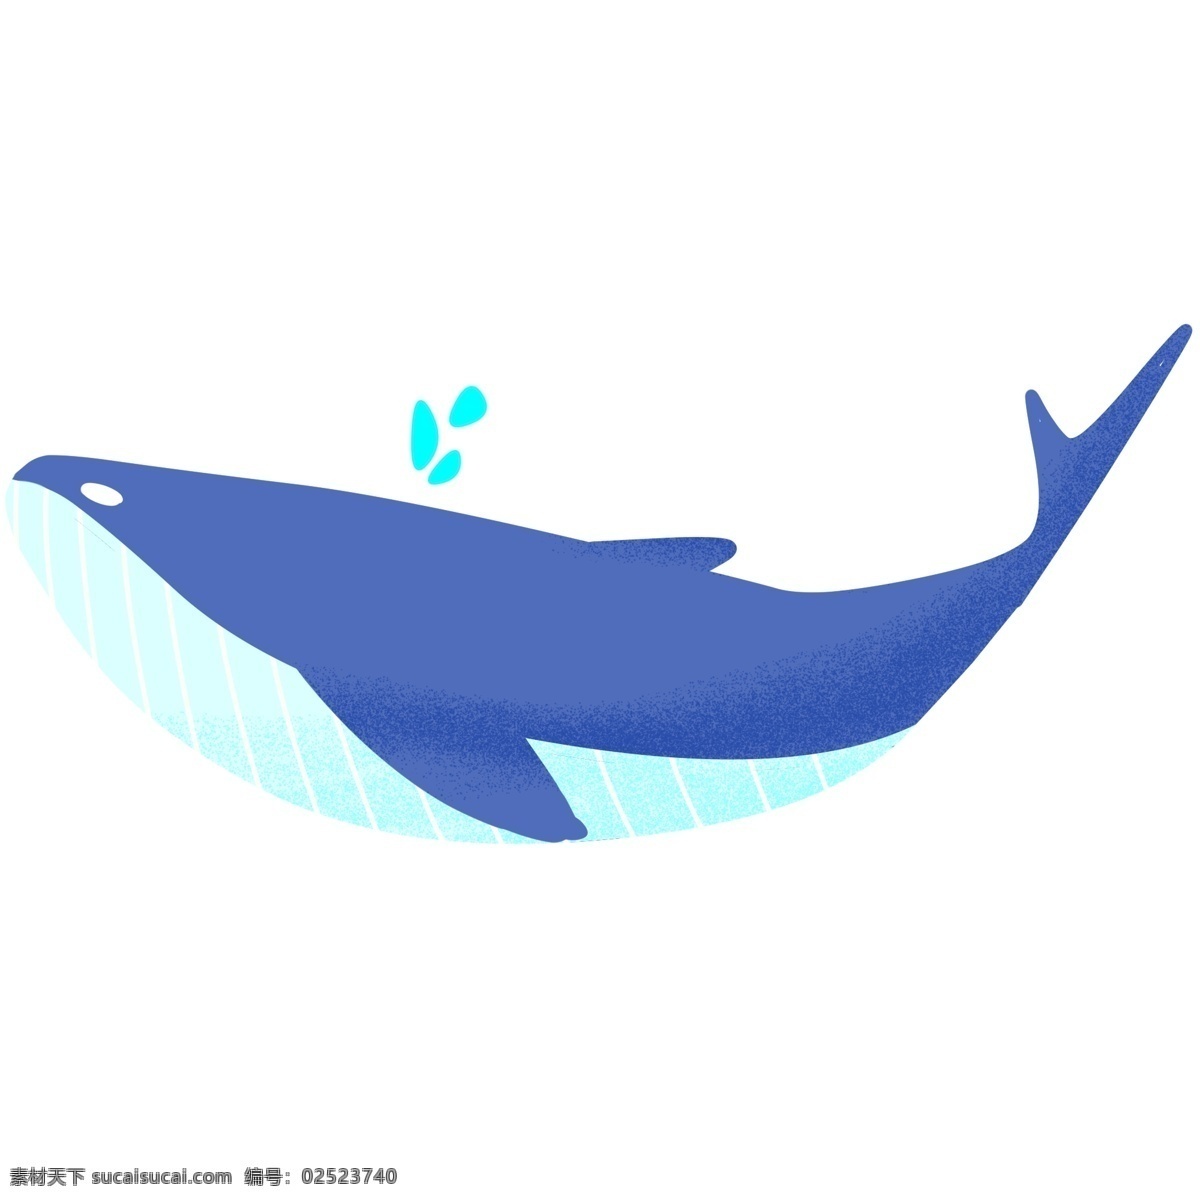 海洋 中 蓝色 鲸鱼 插画 卡通鲸鱼 手绘鲸鱼 白色线条 动物 鲸鱼插画 游动 蓝色鲸鱼 天蓝色肚皮